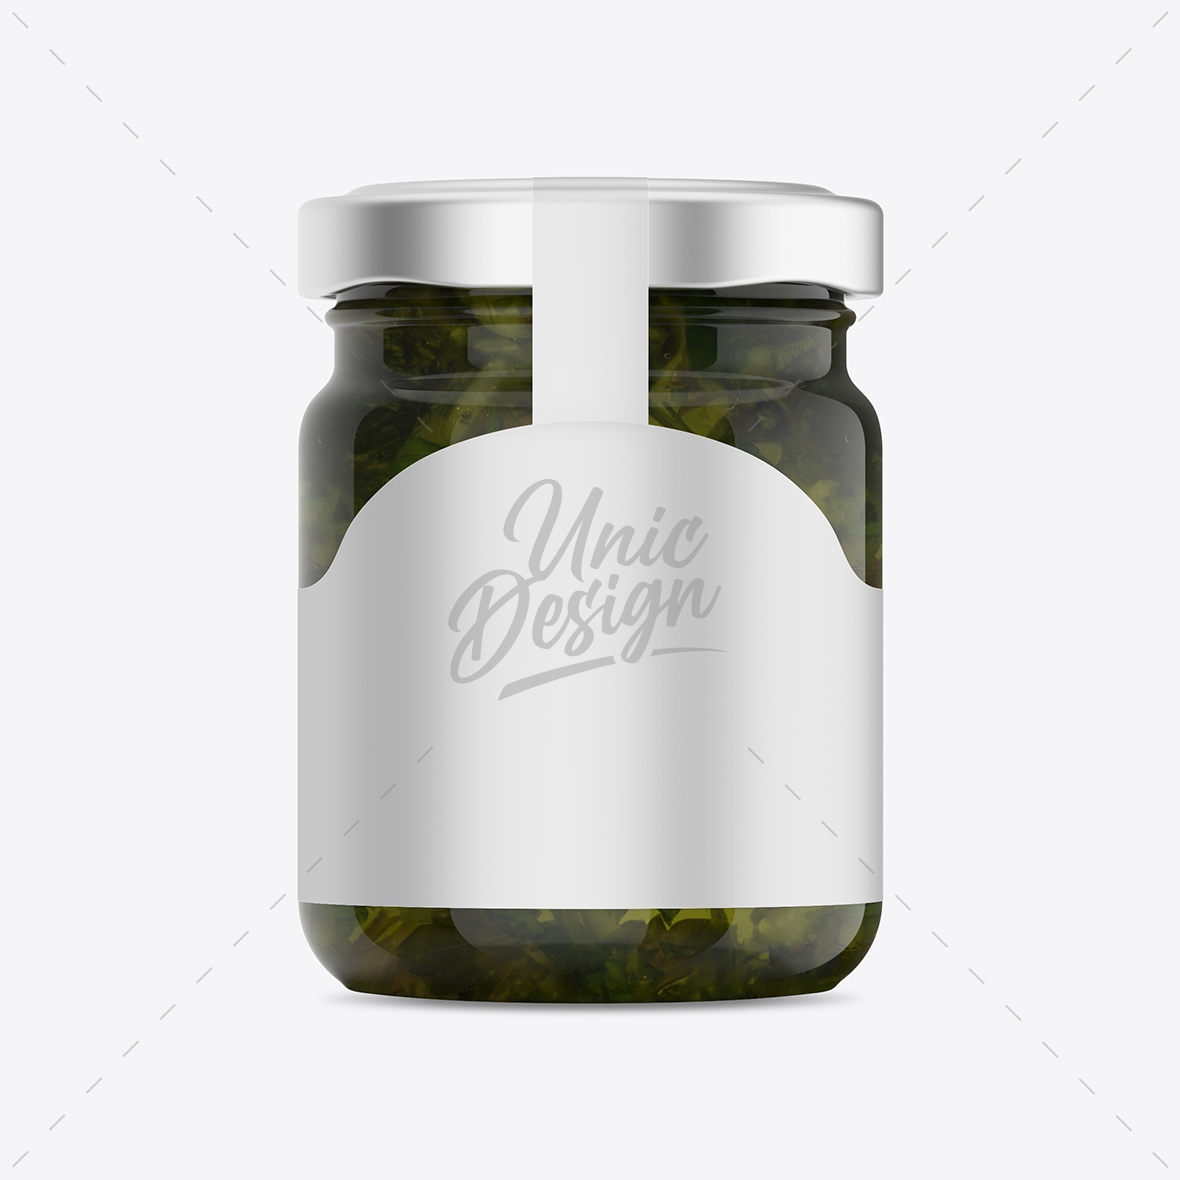 Mint Sauce Jar Mockup